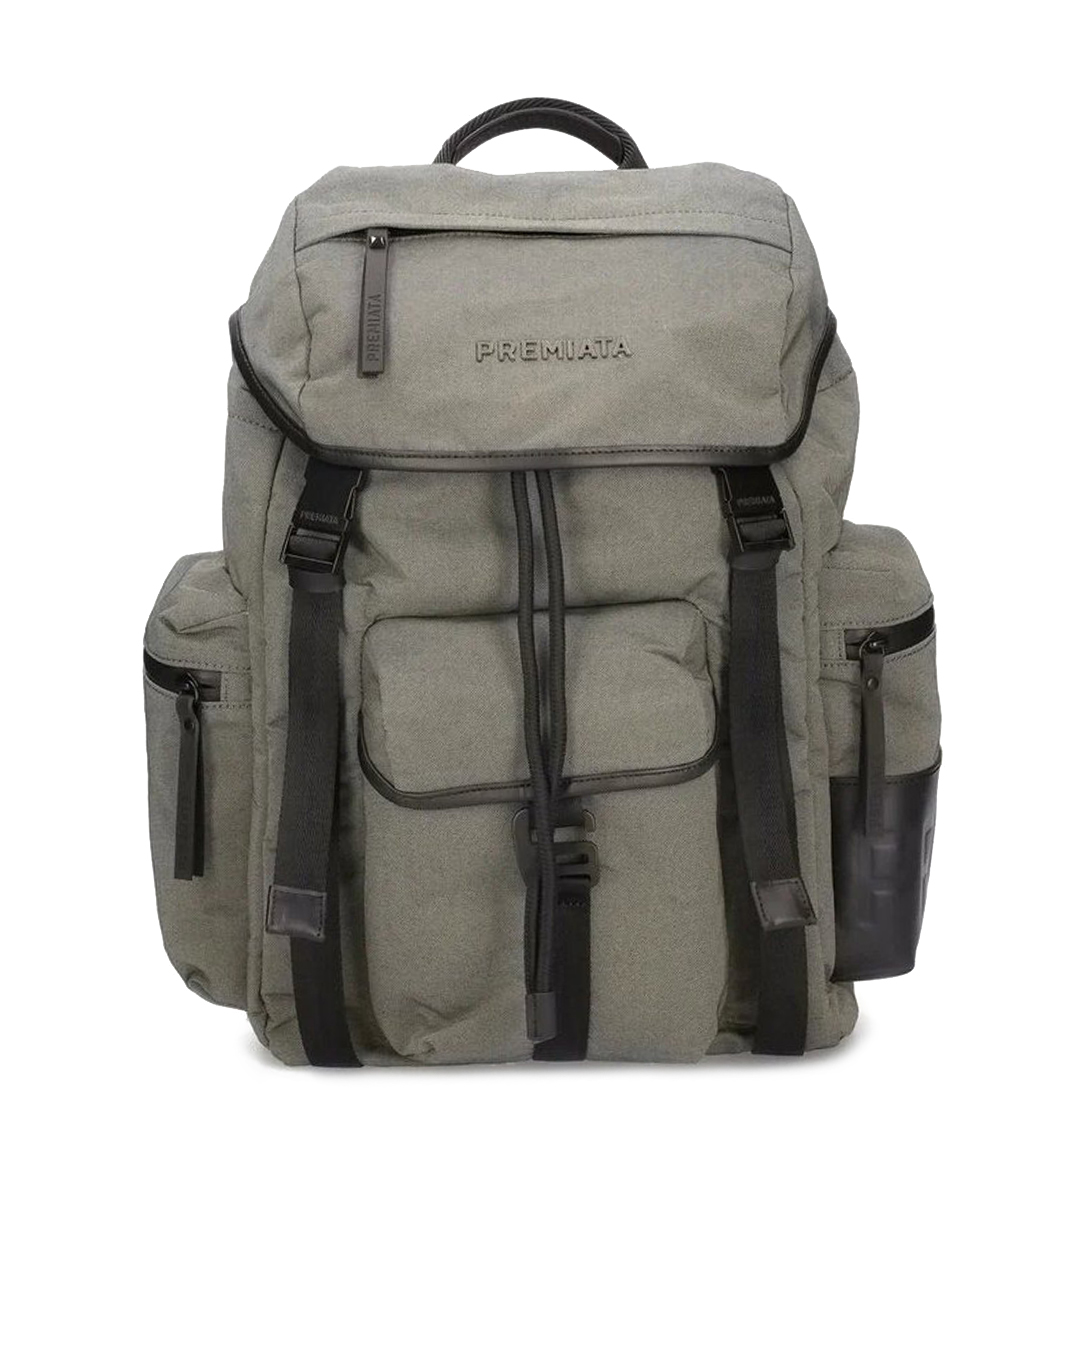 рюкзак Premiata brauberg рюкзак с отделением для ноутбука usb порт leader